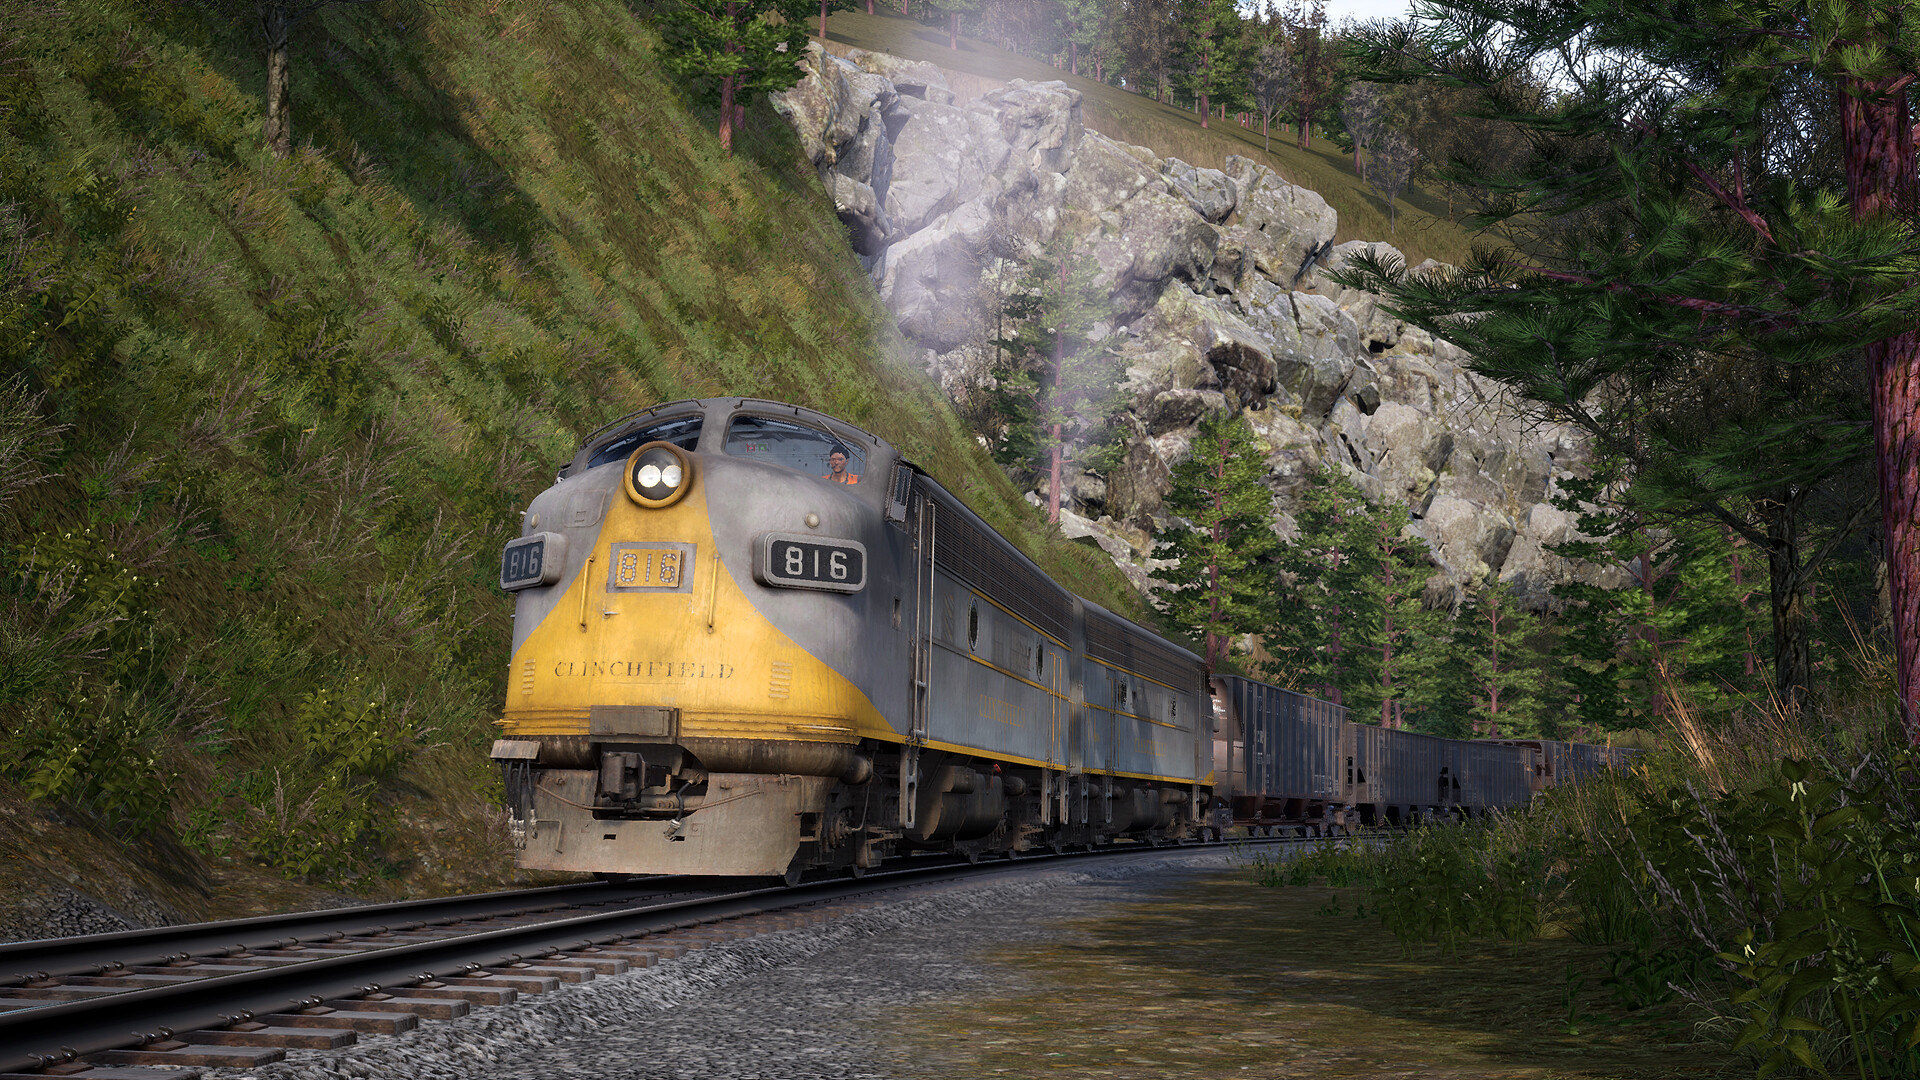 Train Sim World - Clinchfield Railroad - Elkhorn - Dante Route Add-On DLC Steam CD Key, 1.25 usd